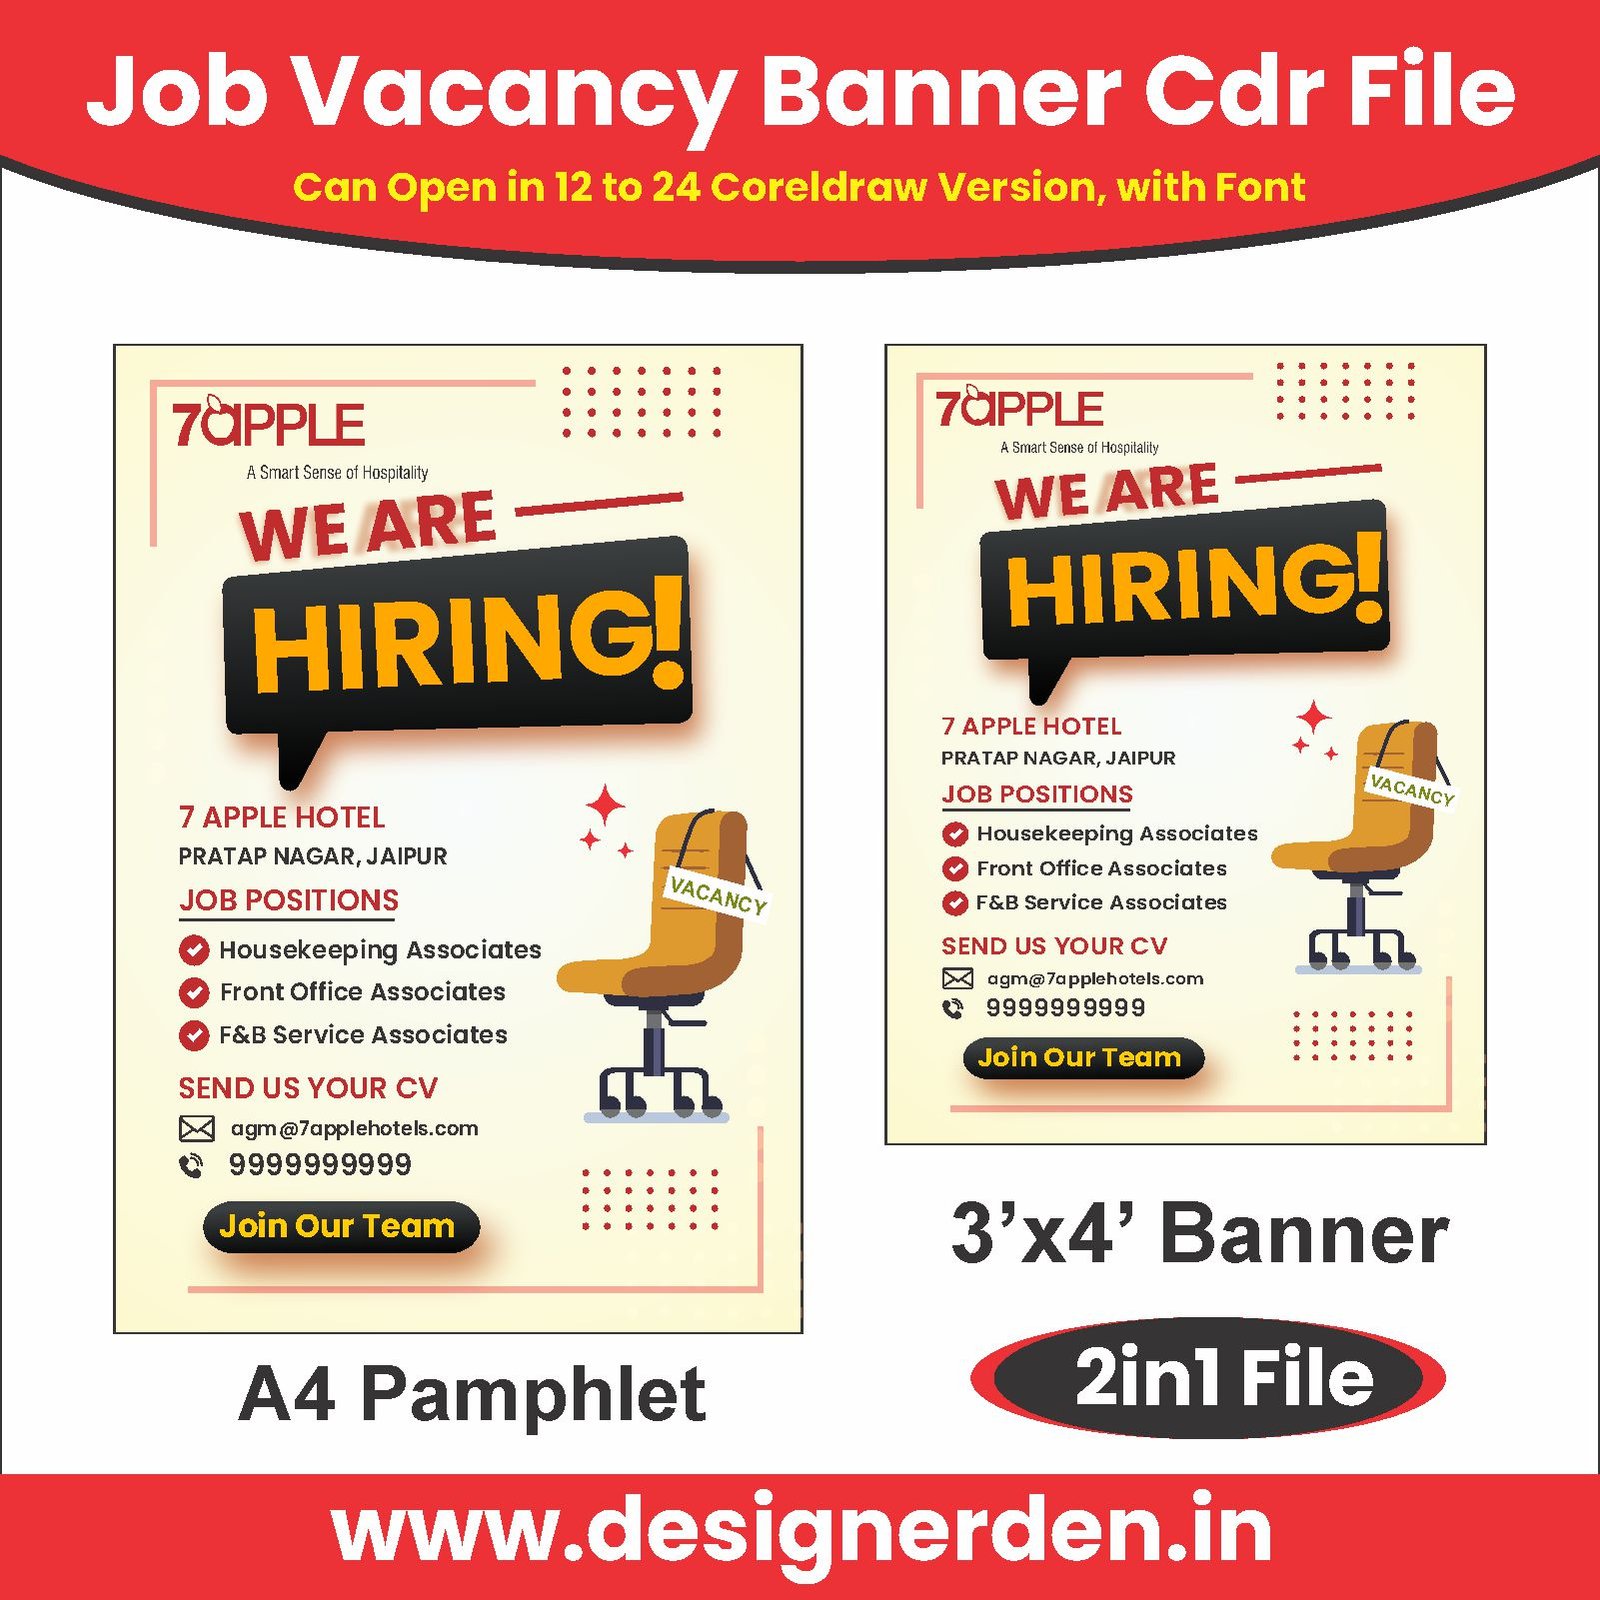 Job Vacancy Banner Cdr File - Designerden.in